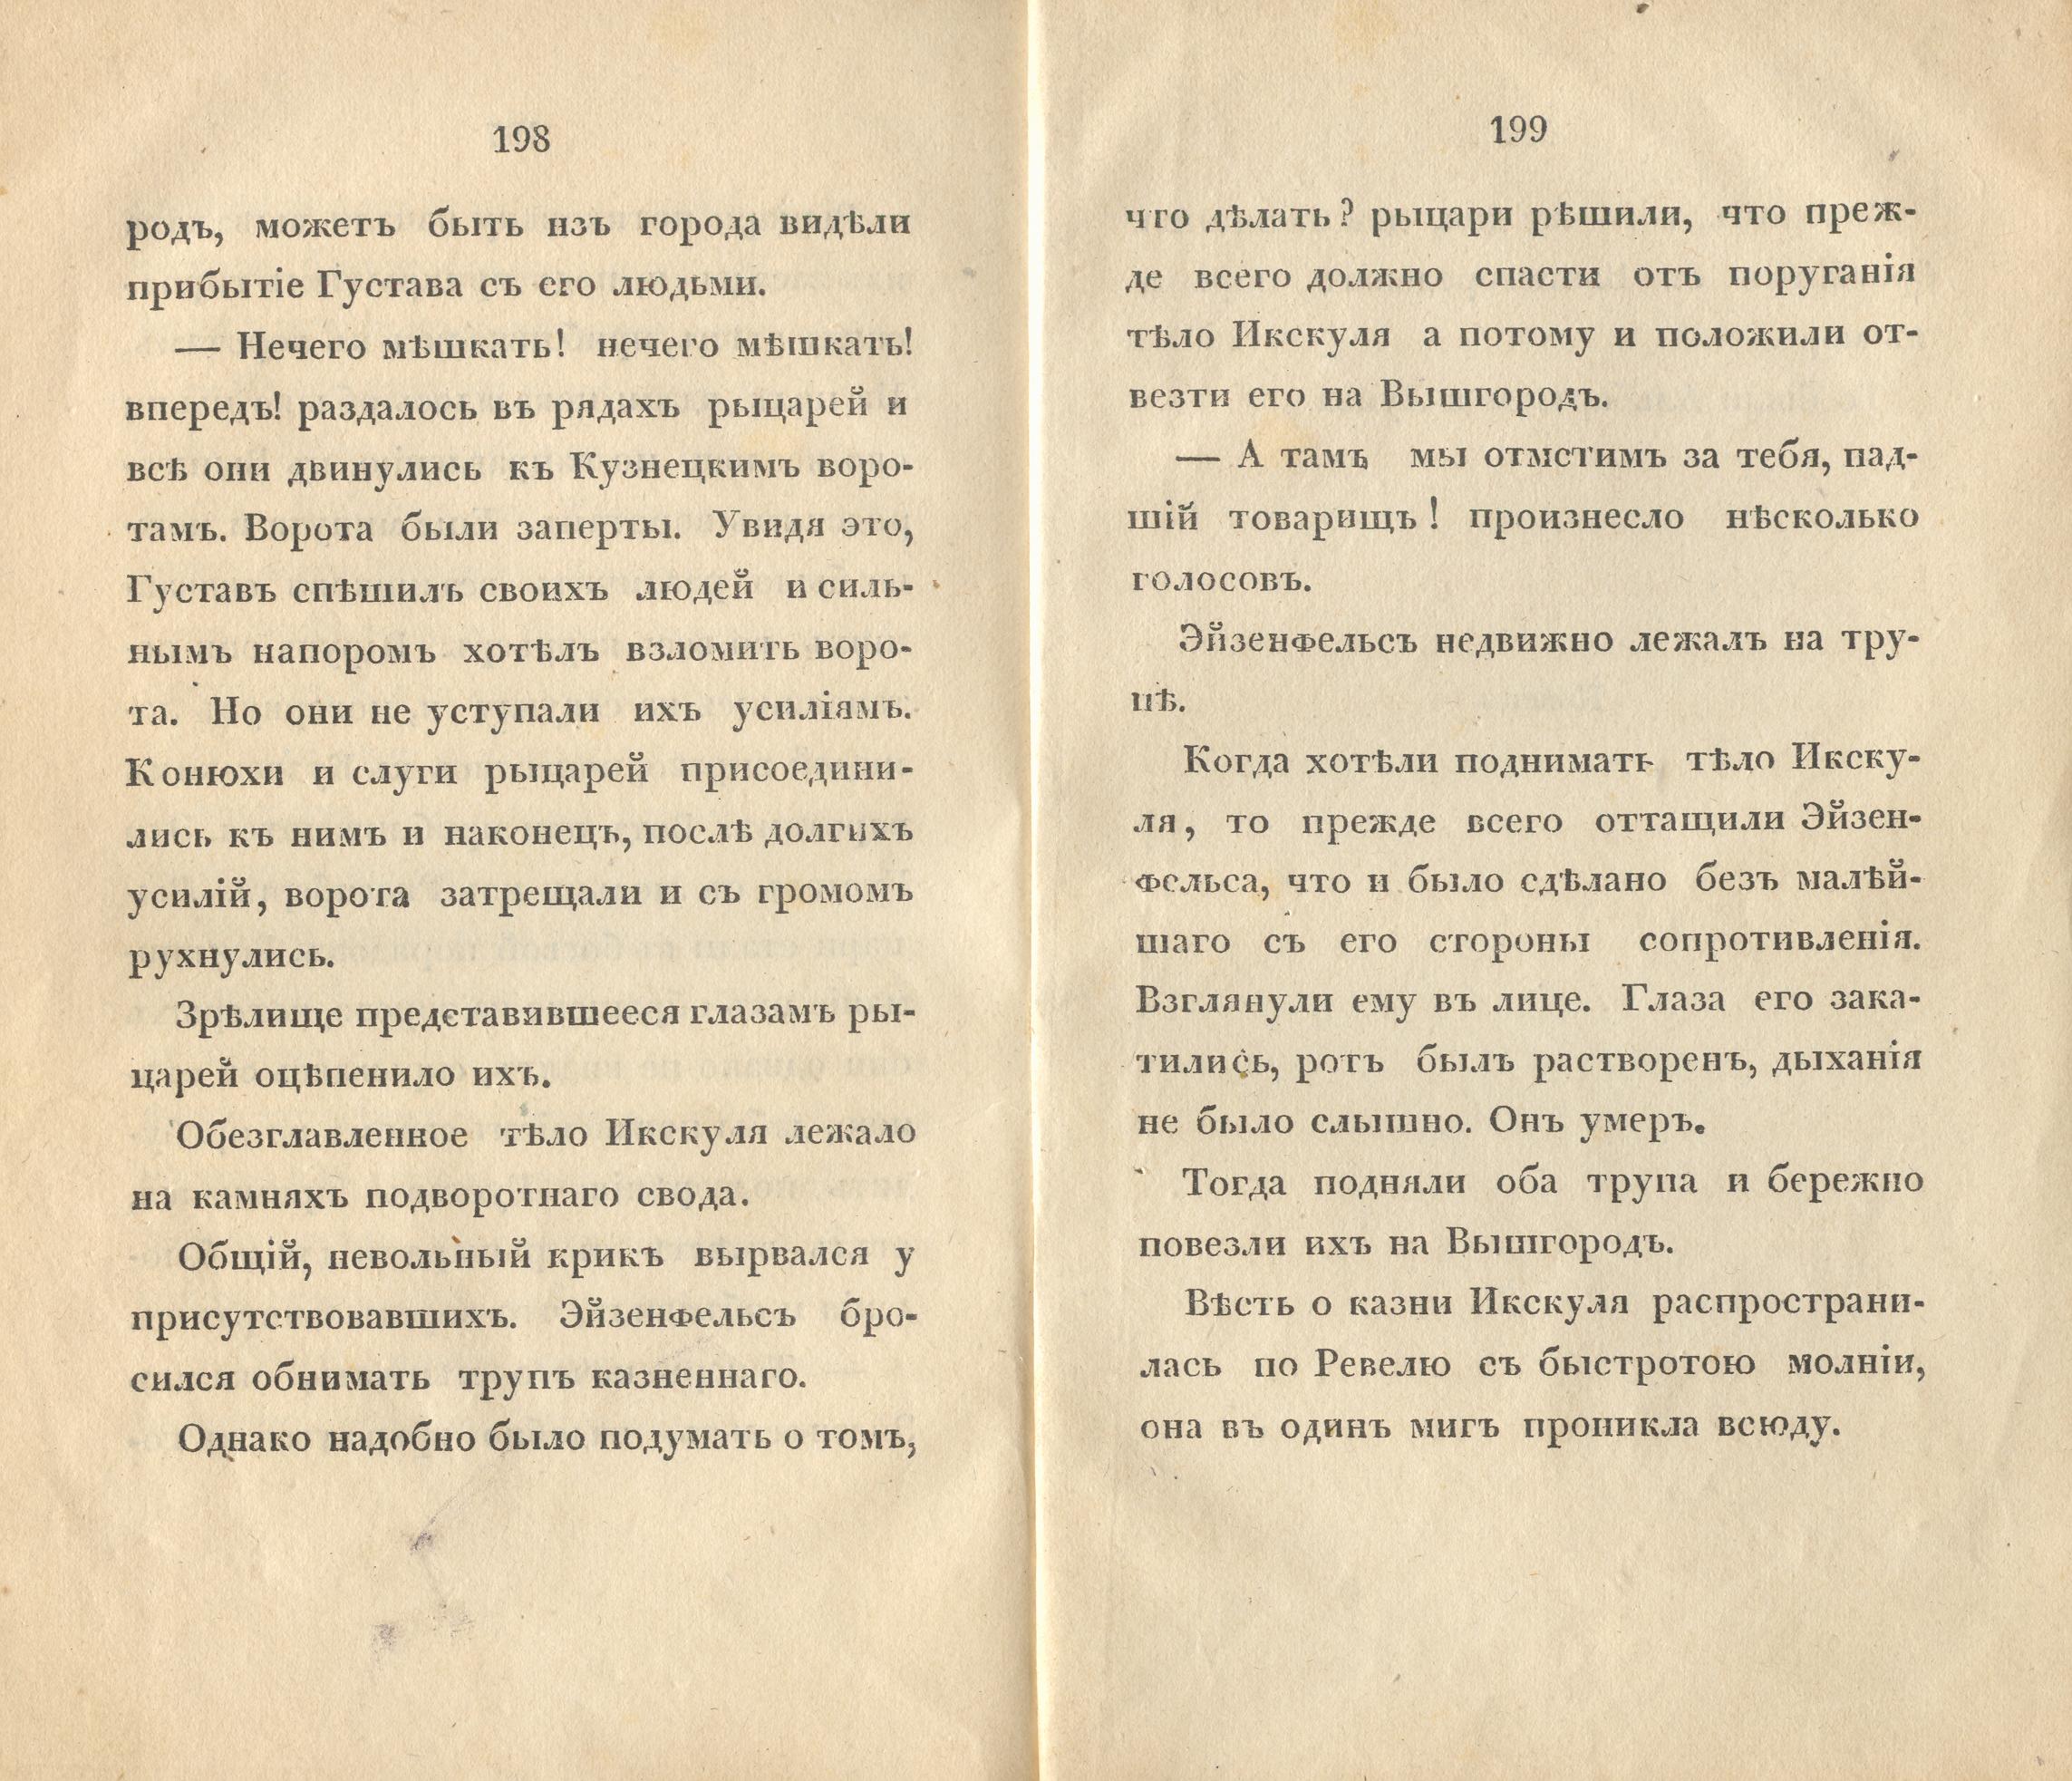 Судъ въ ревельскомъ магистратђ [2] (1841) | 101. (198-199) Main body of text